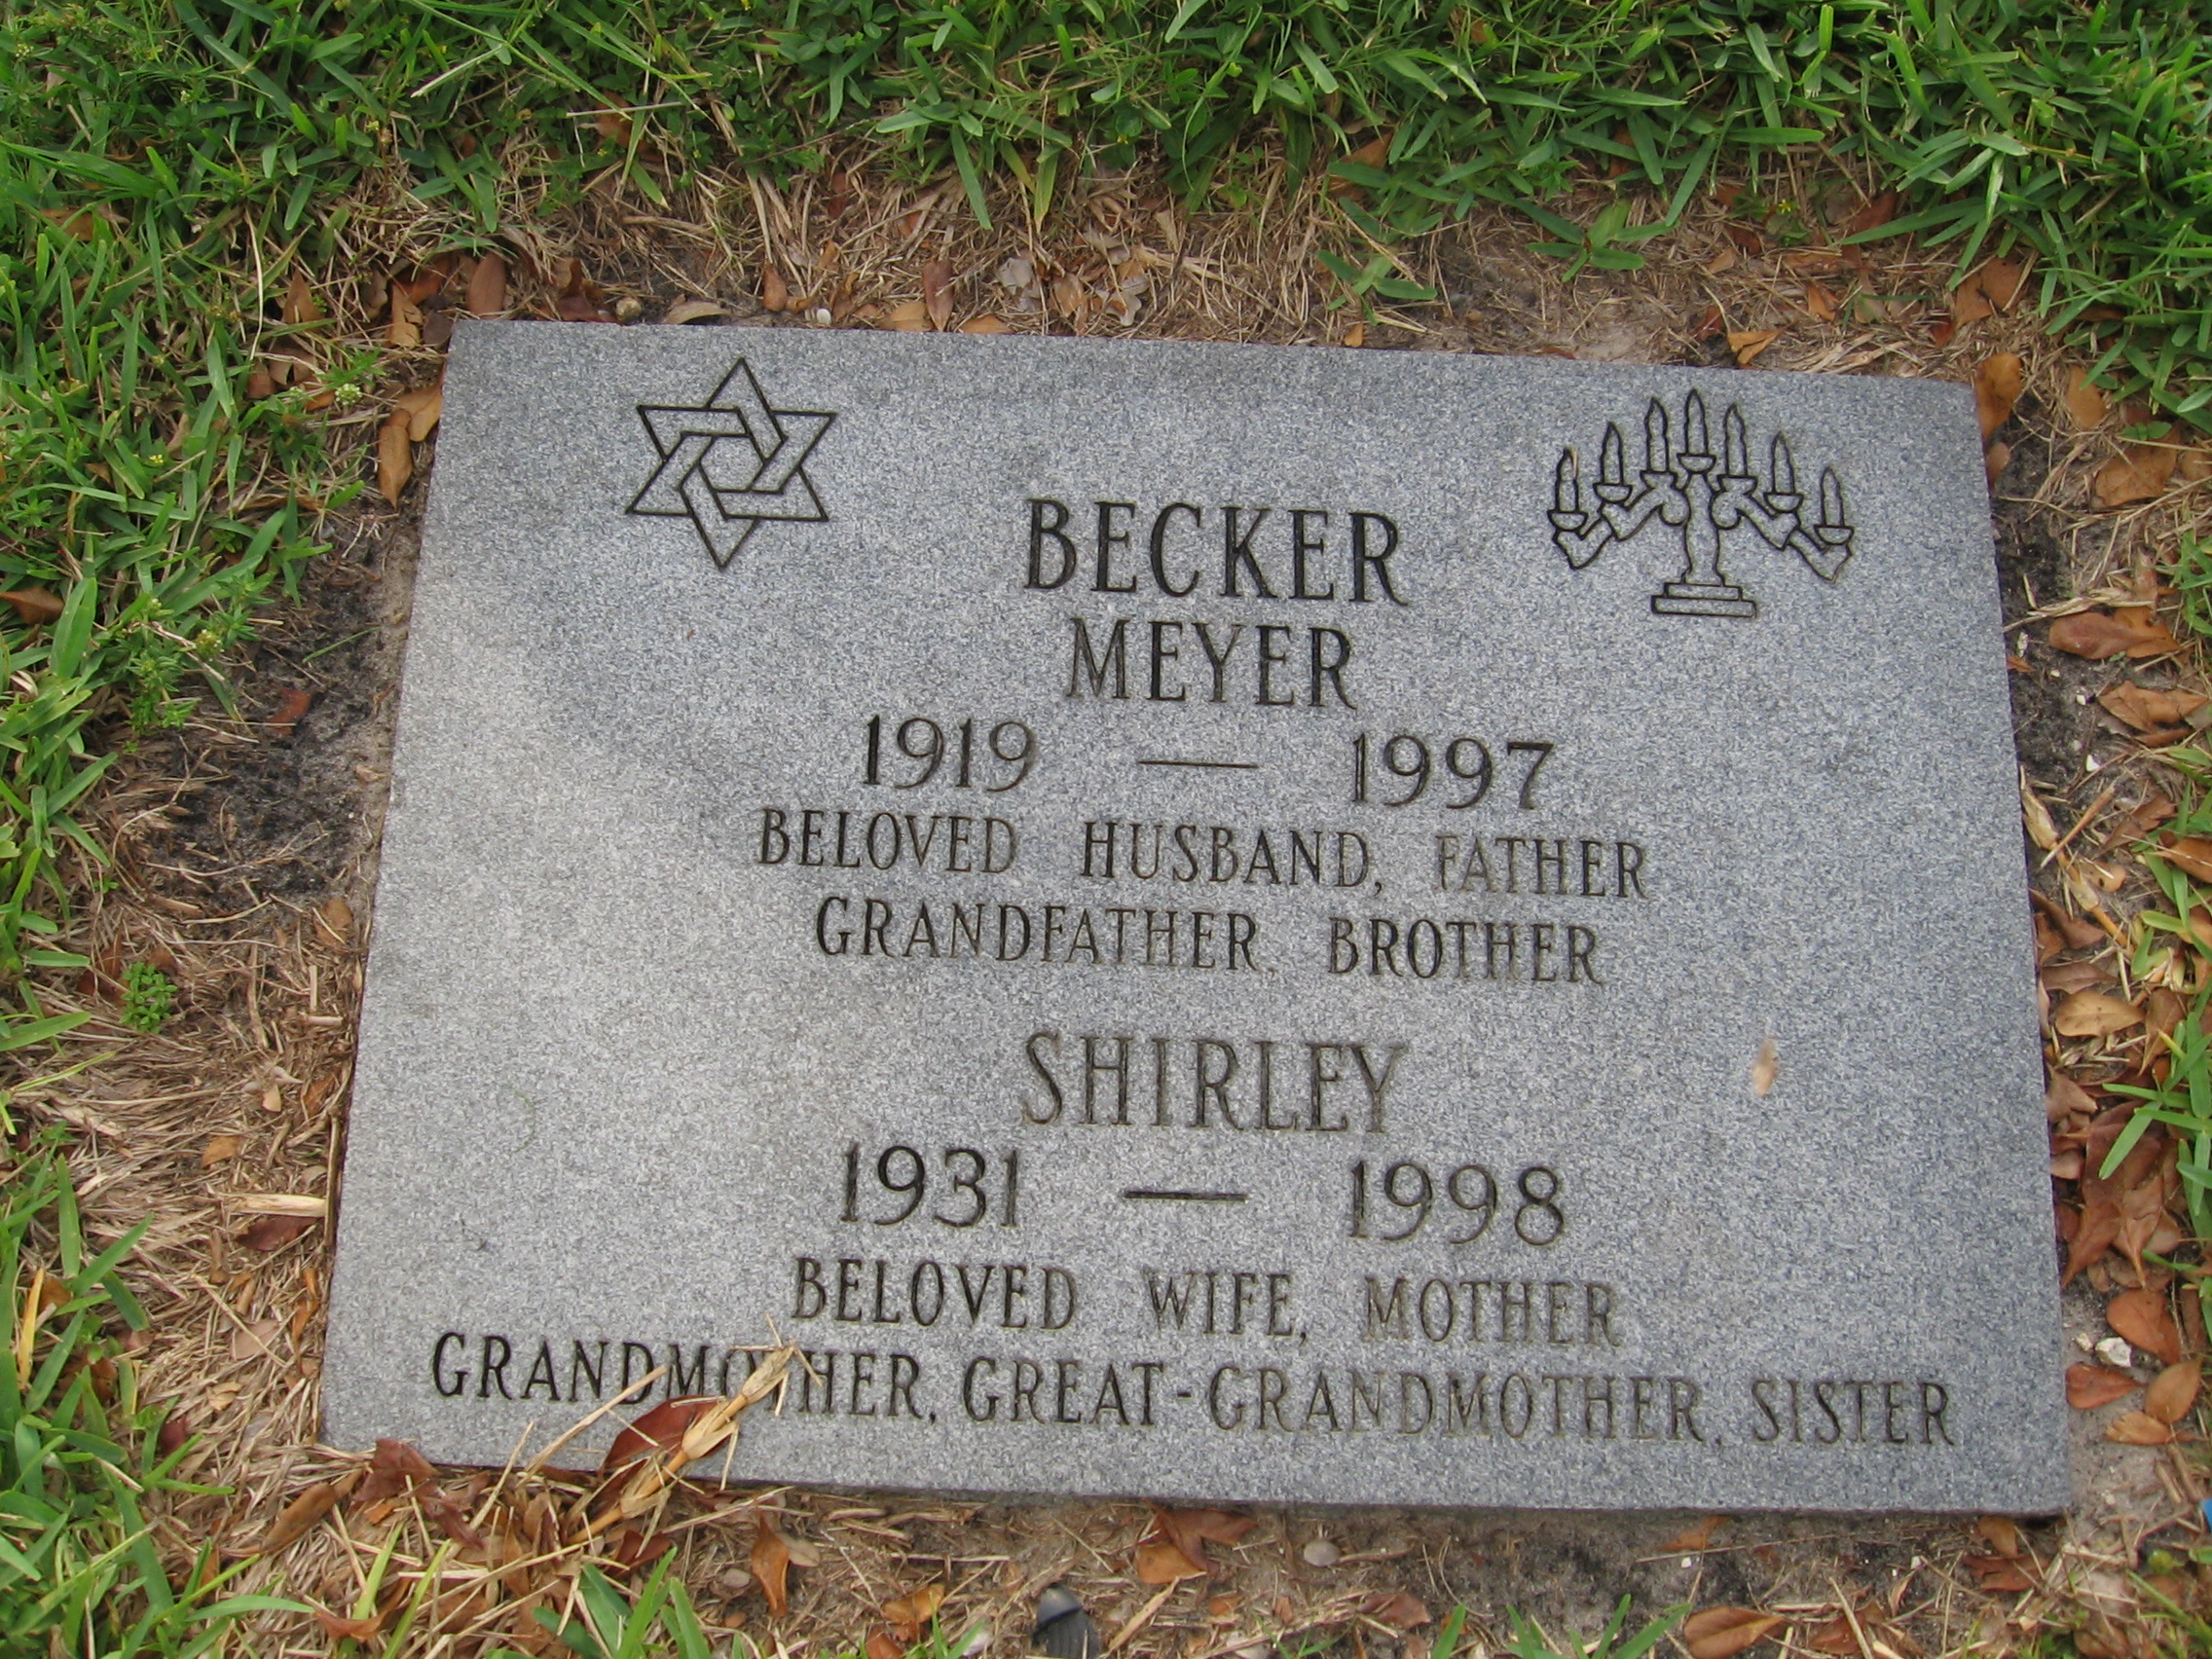 Meyer Becker